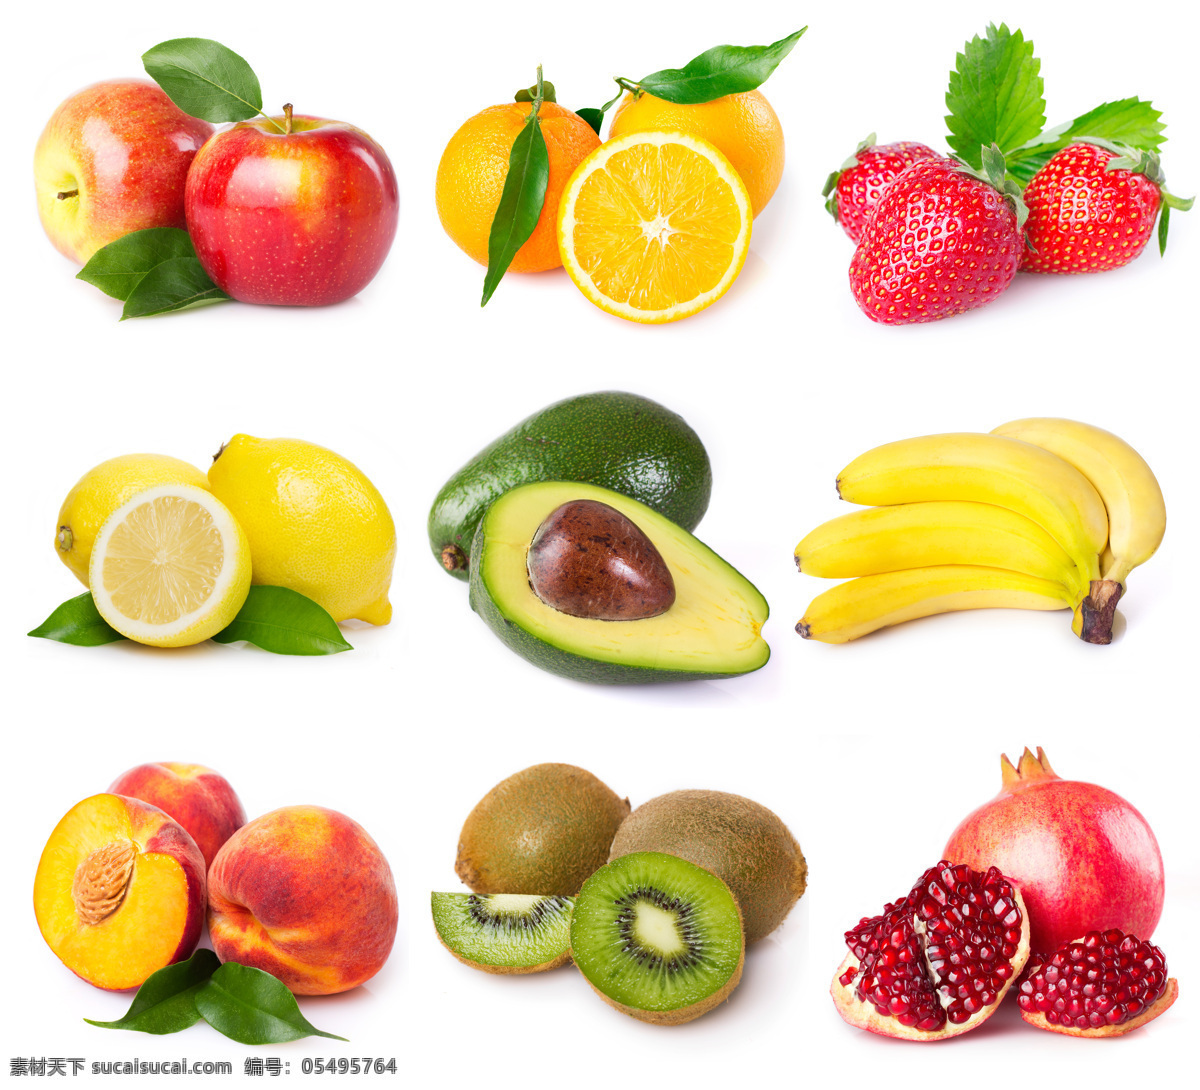 各种 新鲜 水果 苹果 橙子 草莓 柠檬 香蕉 桃 猕猴桃 石榴 食物 美食 水果图片 餐饮美食